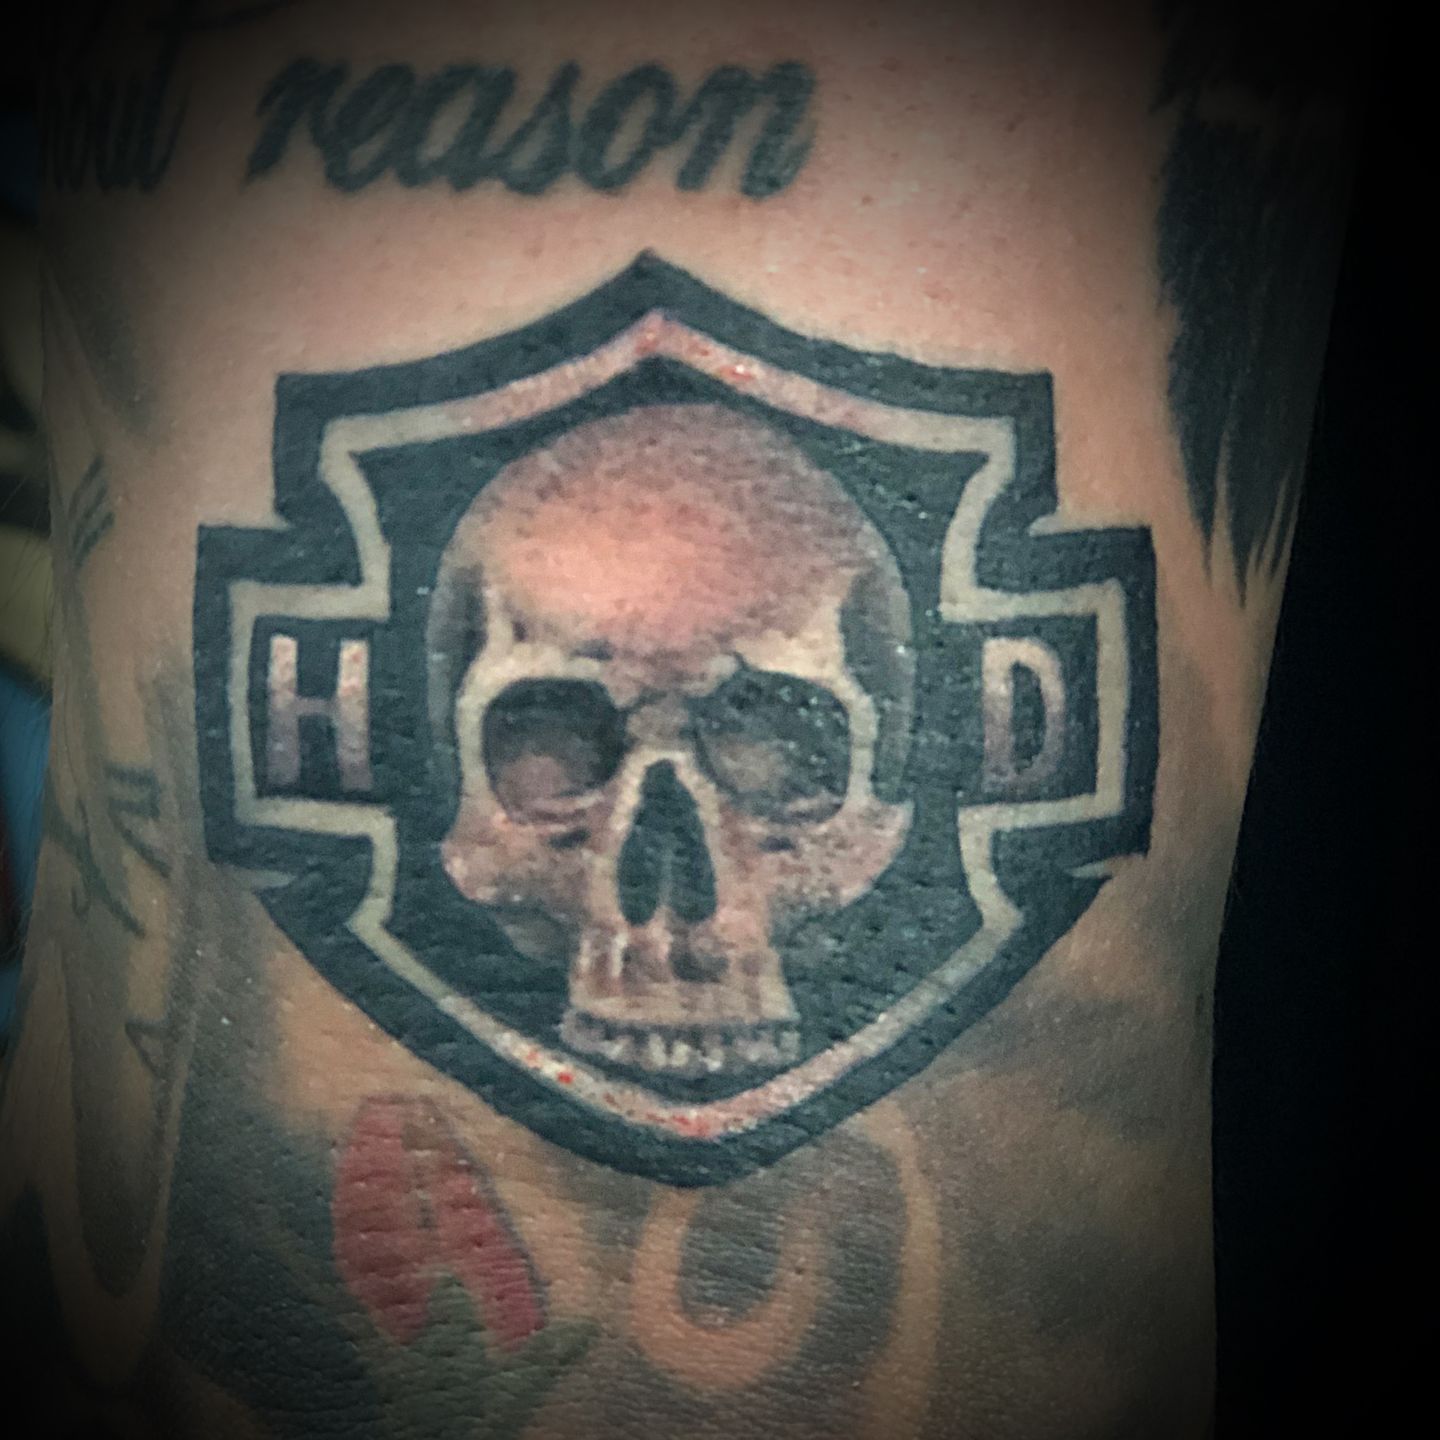 𝗛𝗮𝗿𝗹𝗲𝘆 𝗗𝗮𝘃𝗶𝗱𝘀𝗼𝗻  Artist josefgrimmtattoos  tattoo  tattoos americantattoo harleydavidson mke mketattoo skull  skulltattoo  Instagram